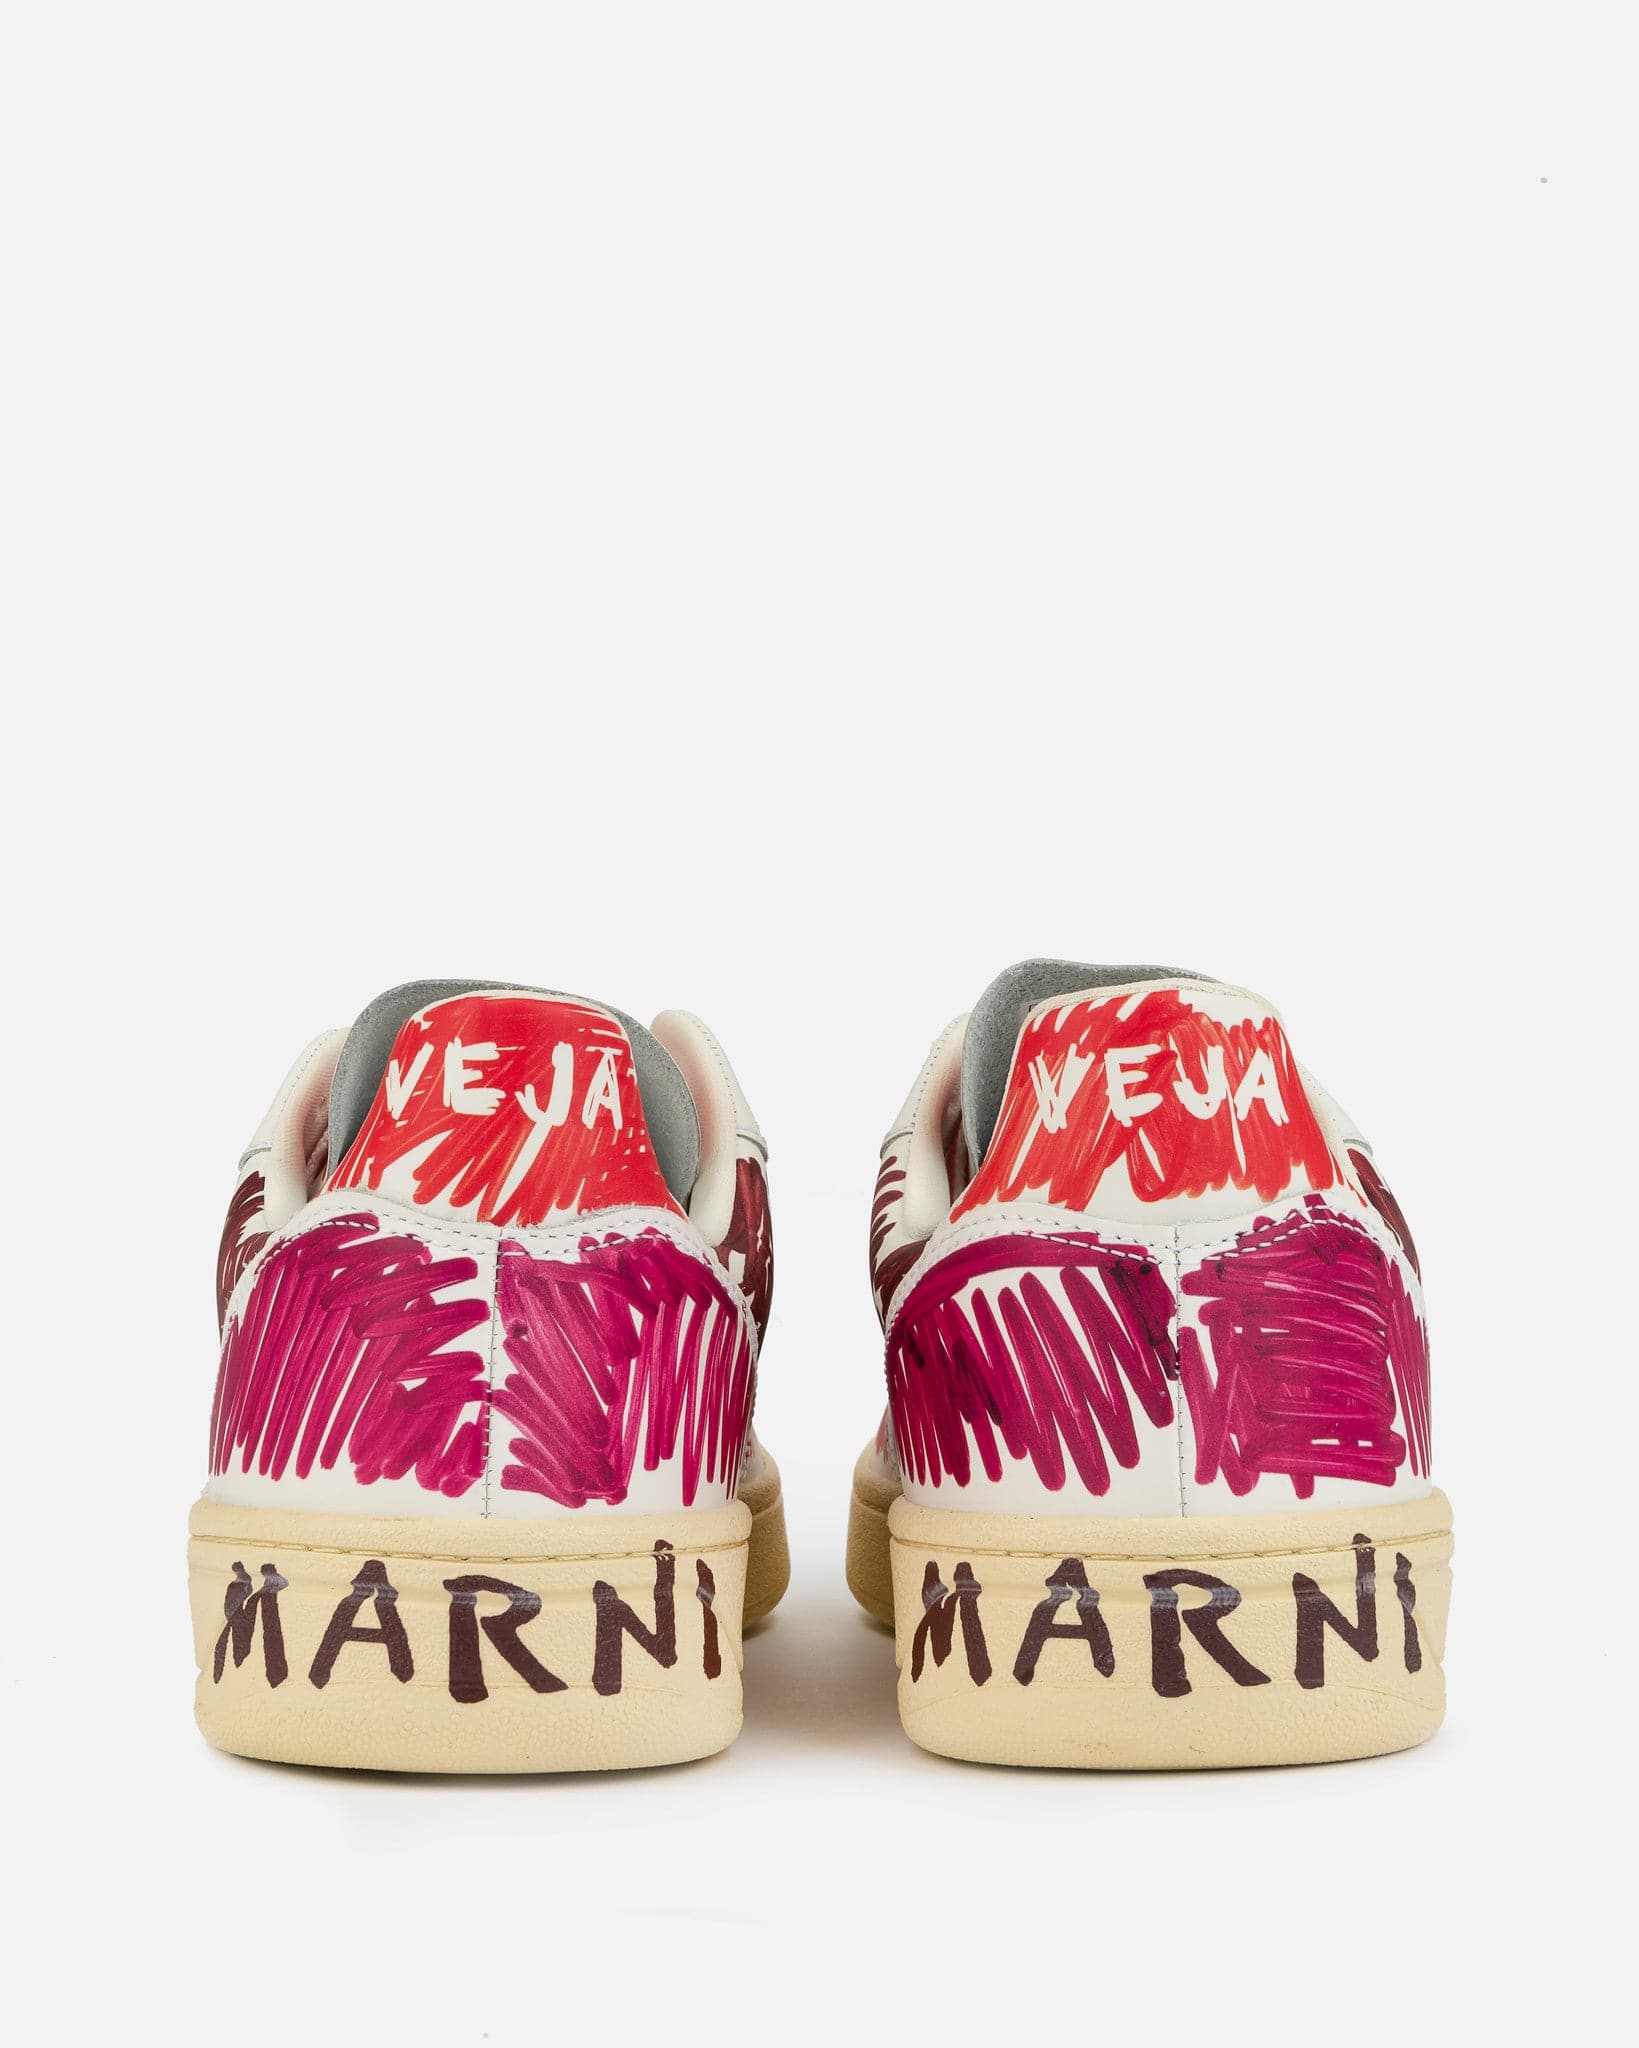 Marni Men's Sneakers Veja V-10 Leather in Marsala